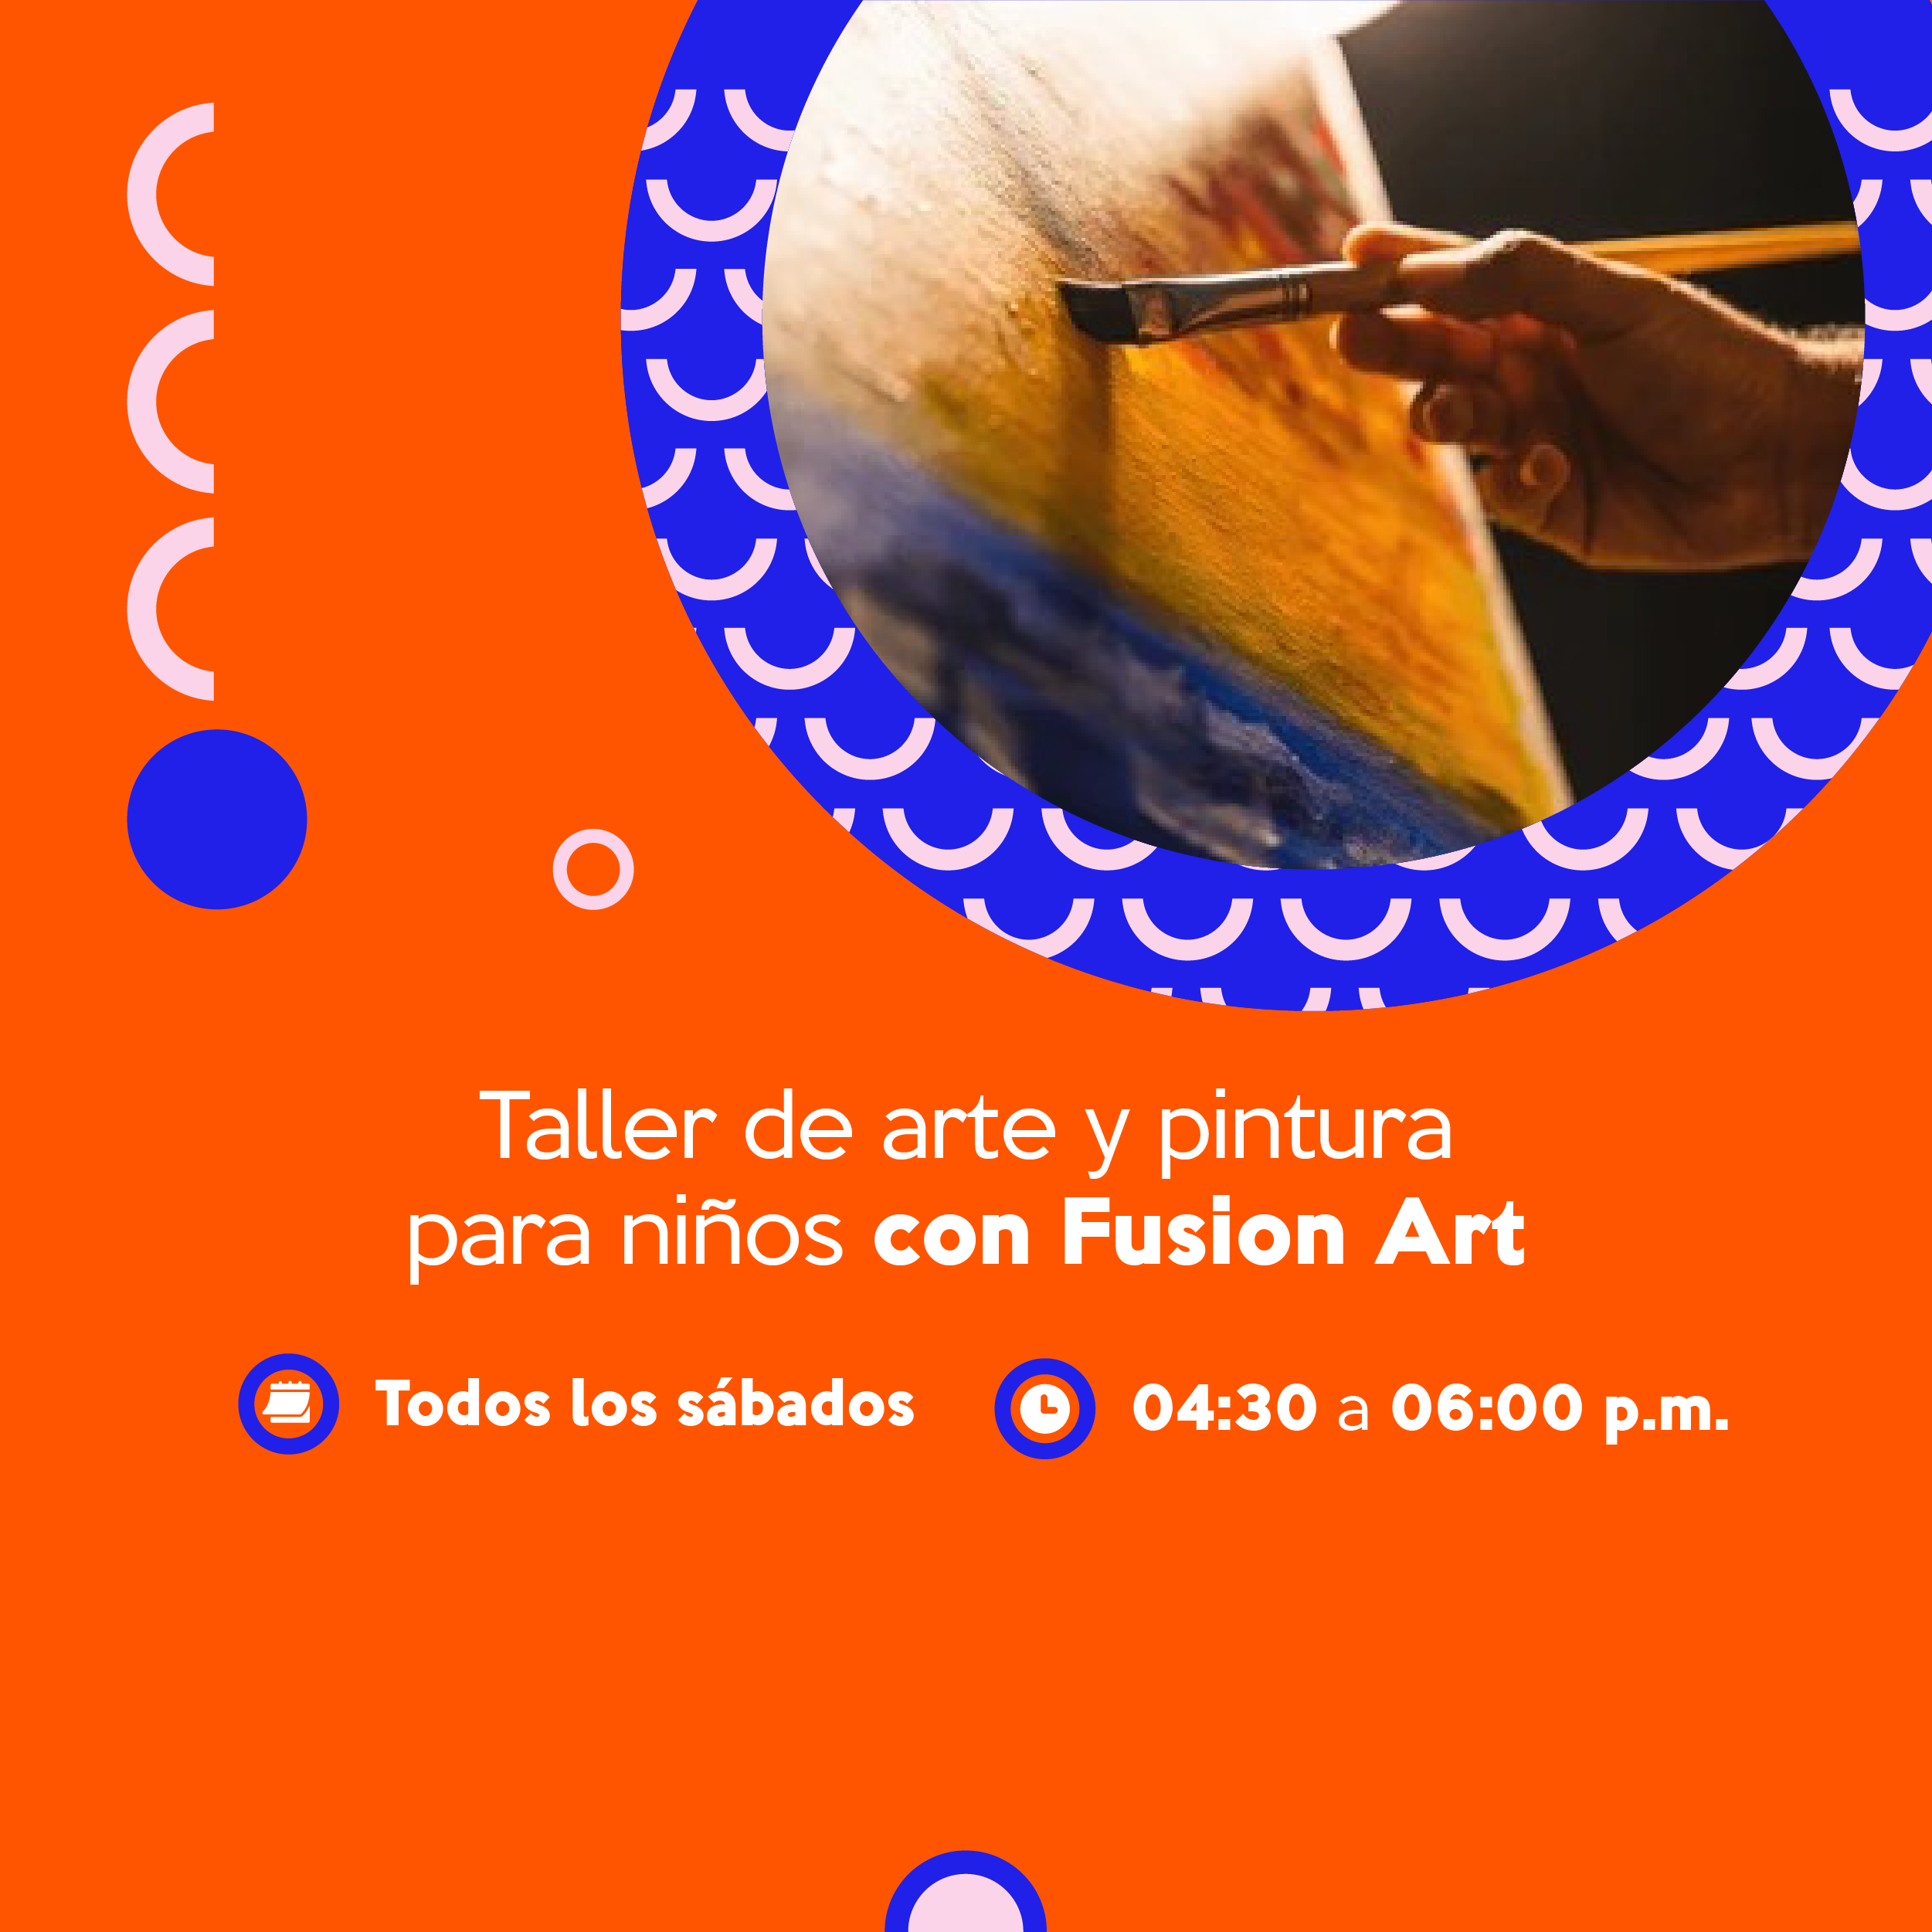 Taller de arte y pintura para niños con Fusion Art